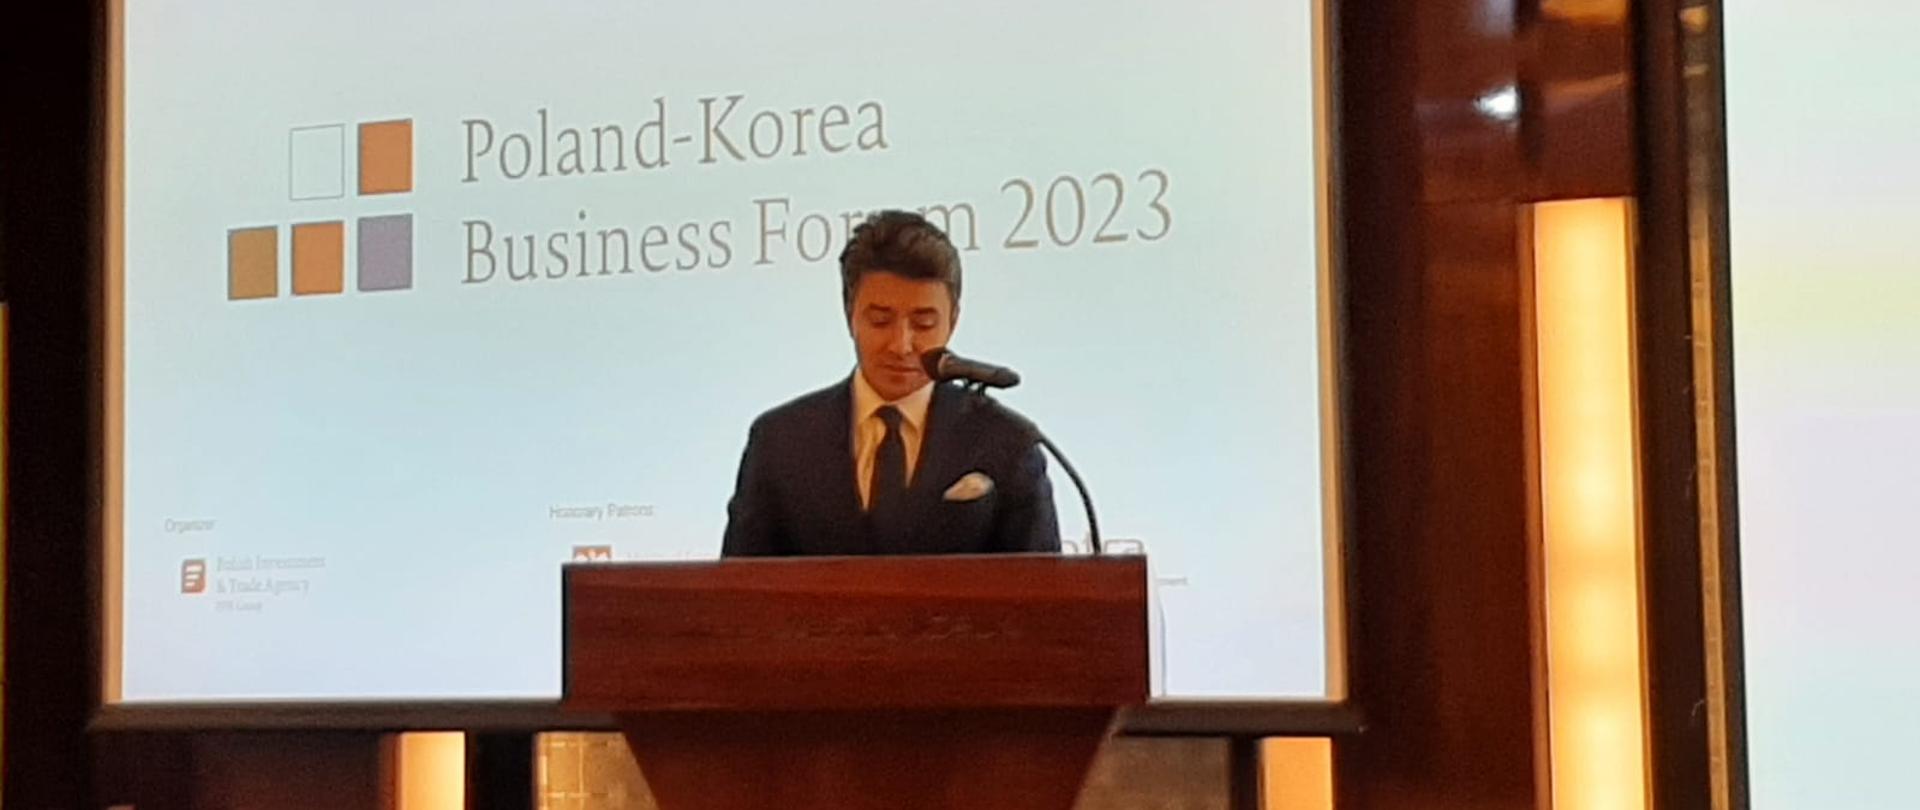 Pan Aleksander Siemaszko, zastępca dyrektora Departamentu Handlu i Współpracy Międzynarodowej przemawia podczas Forum Biznesu Polska-Korea w Seulu.